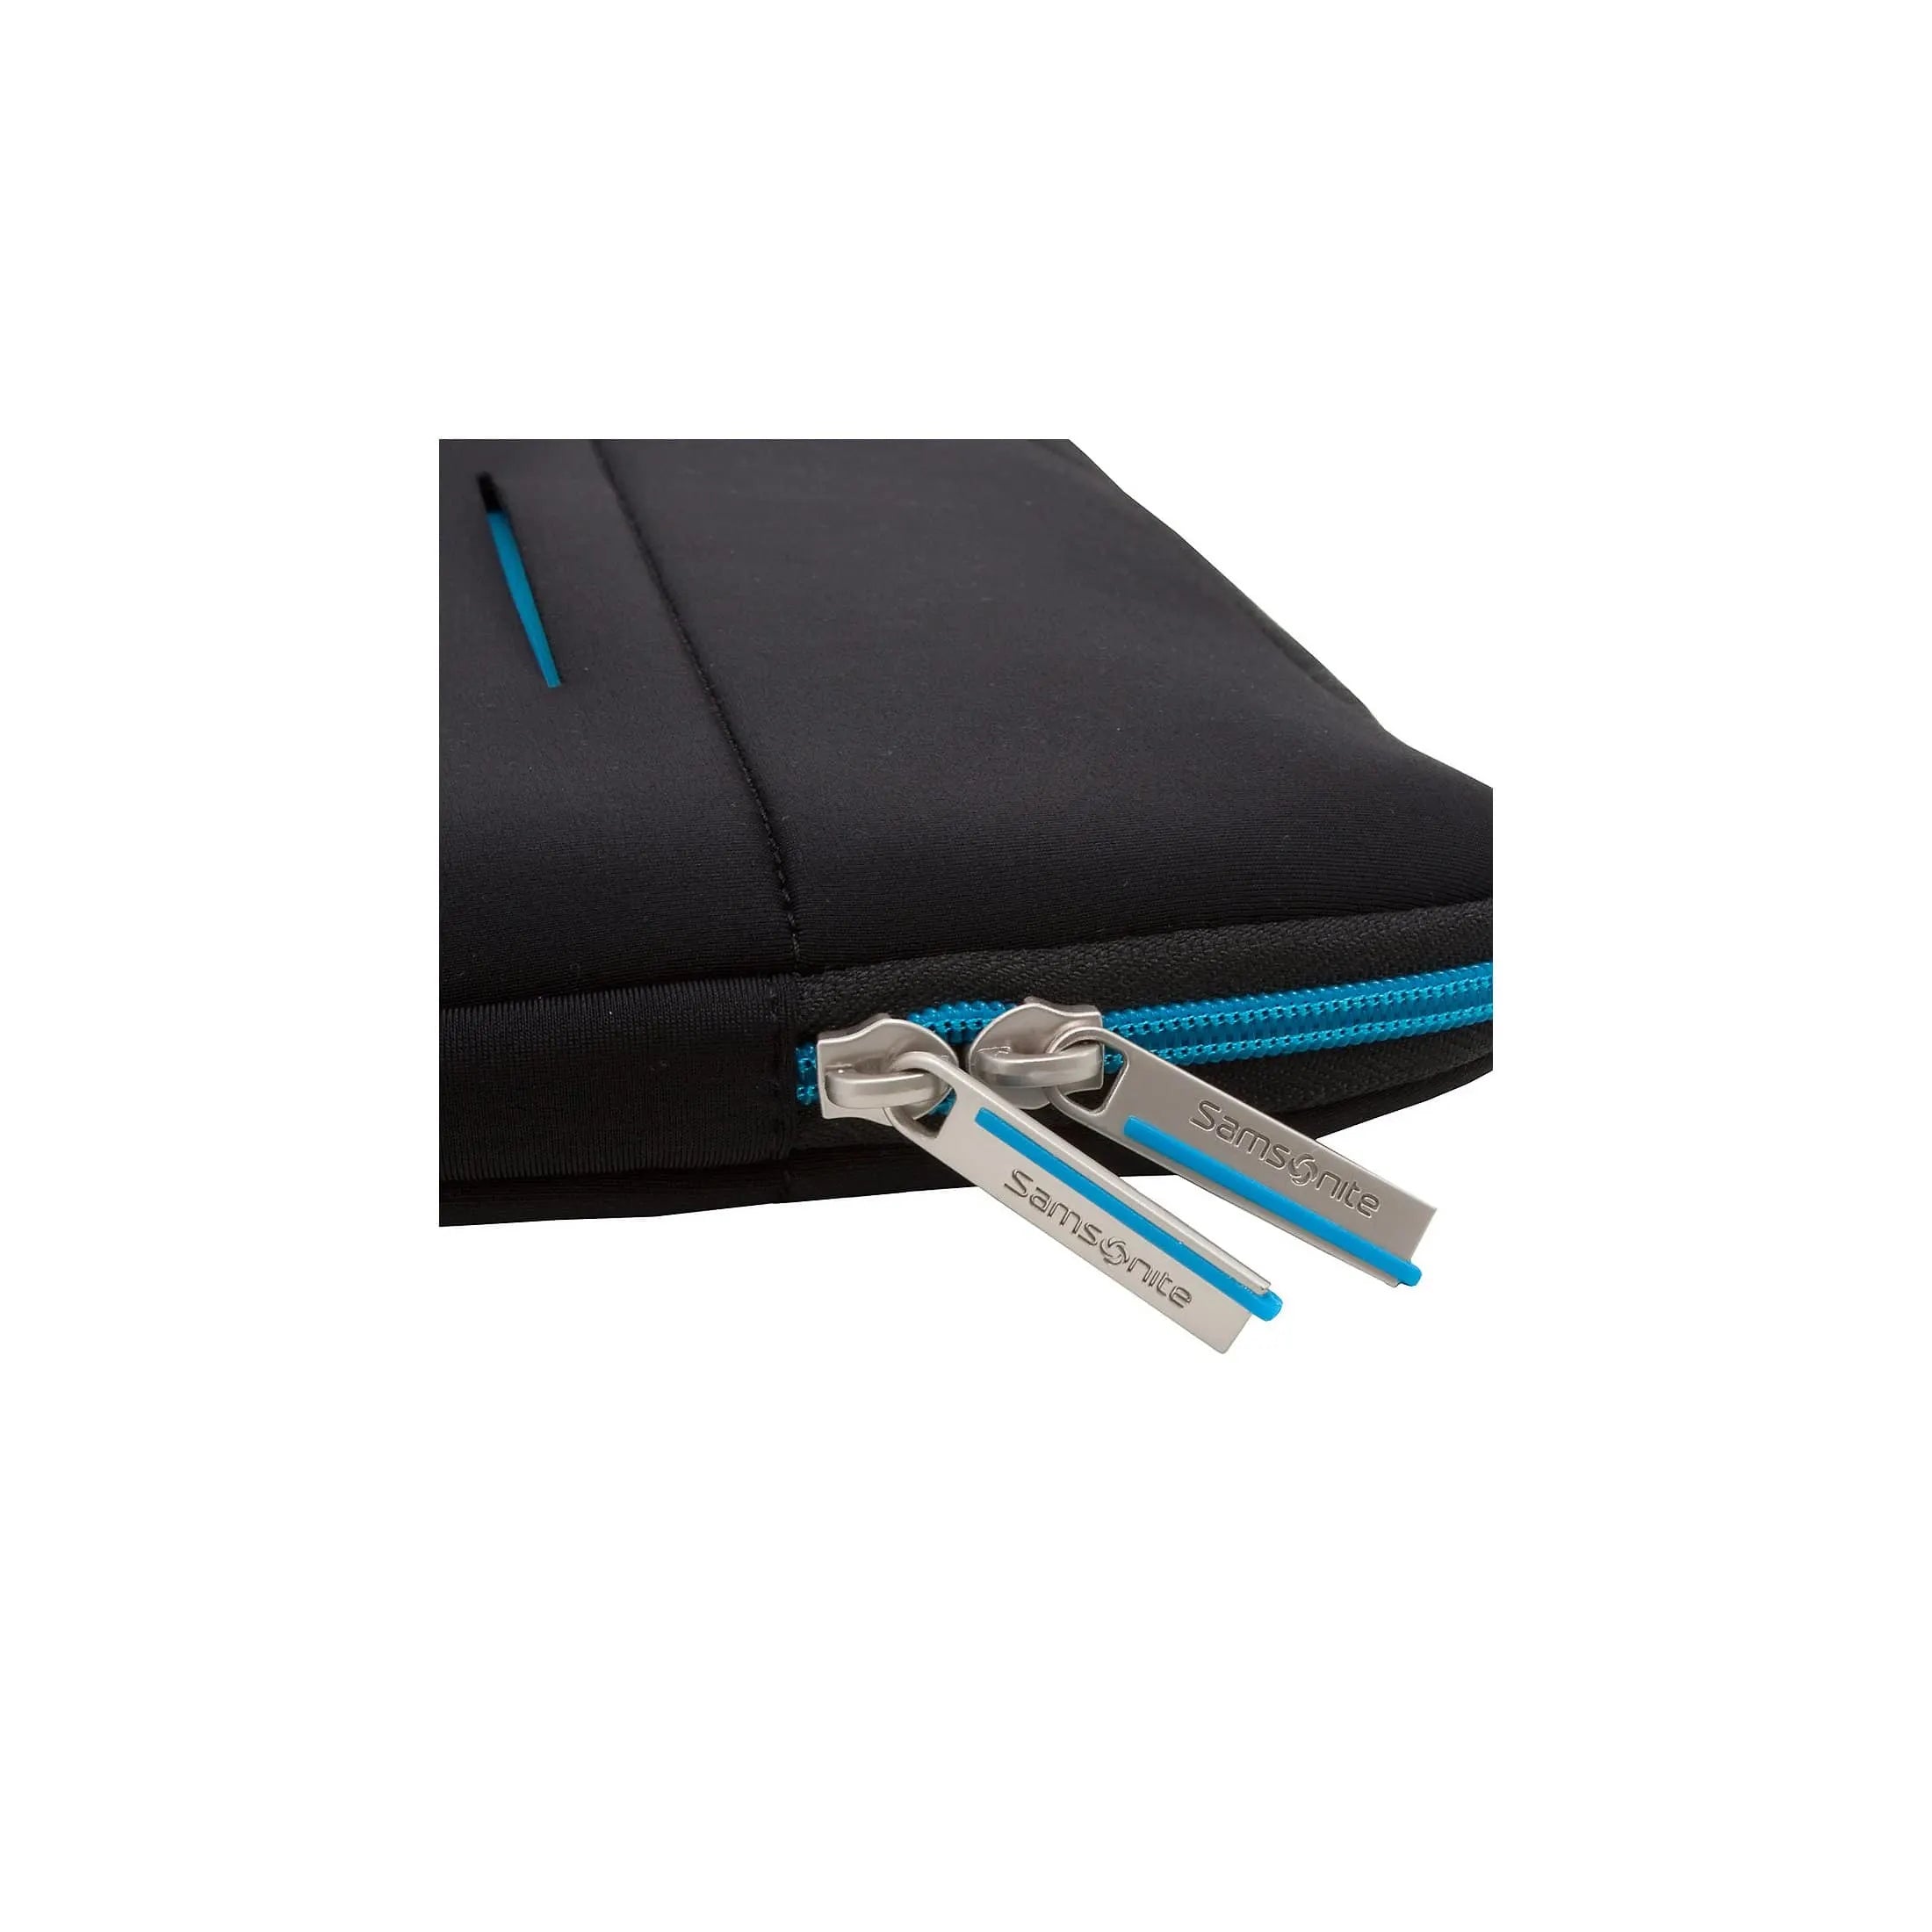 Samsonite Airglow laptop sleeve 33 cm - black/blue